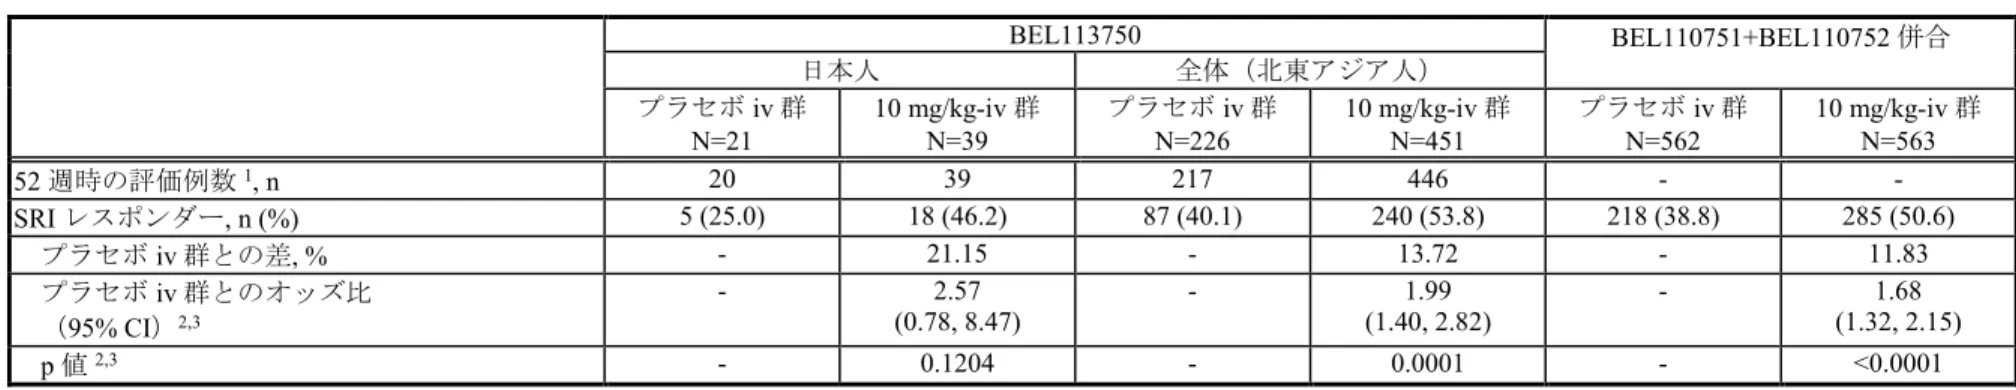 表 2.5.4-5        52 週時の SRI レスポンダー率（BEL113750 試験、BEL110751+BEL110752 試験併合：MITT 集団） BEL113750 BEL110751+BEL110752 併合 日本人 全体（北東アジア人） プラセボ iv 群 N=21 10 mg/kg-iv 群N=39 プラセボ iv 群N=226 10 mg/kg-iv 群N=451 プラセボ iv 群N=562 10 mg/kg-iv 群N=563 52 週時の評価例数 1 , n 20 39 2